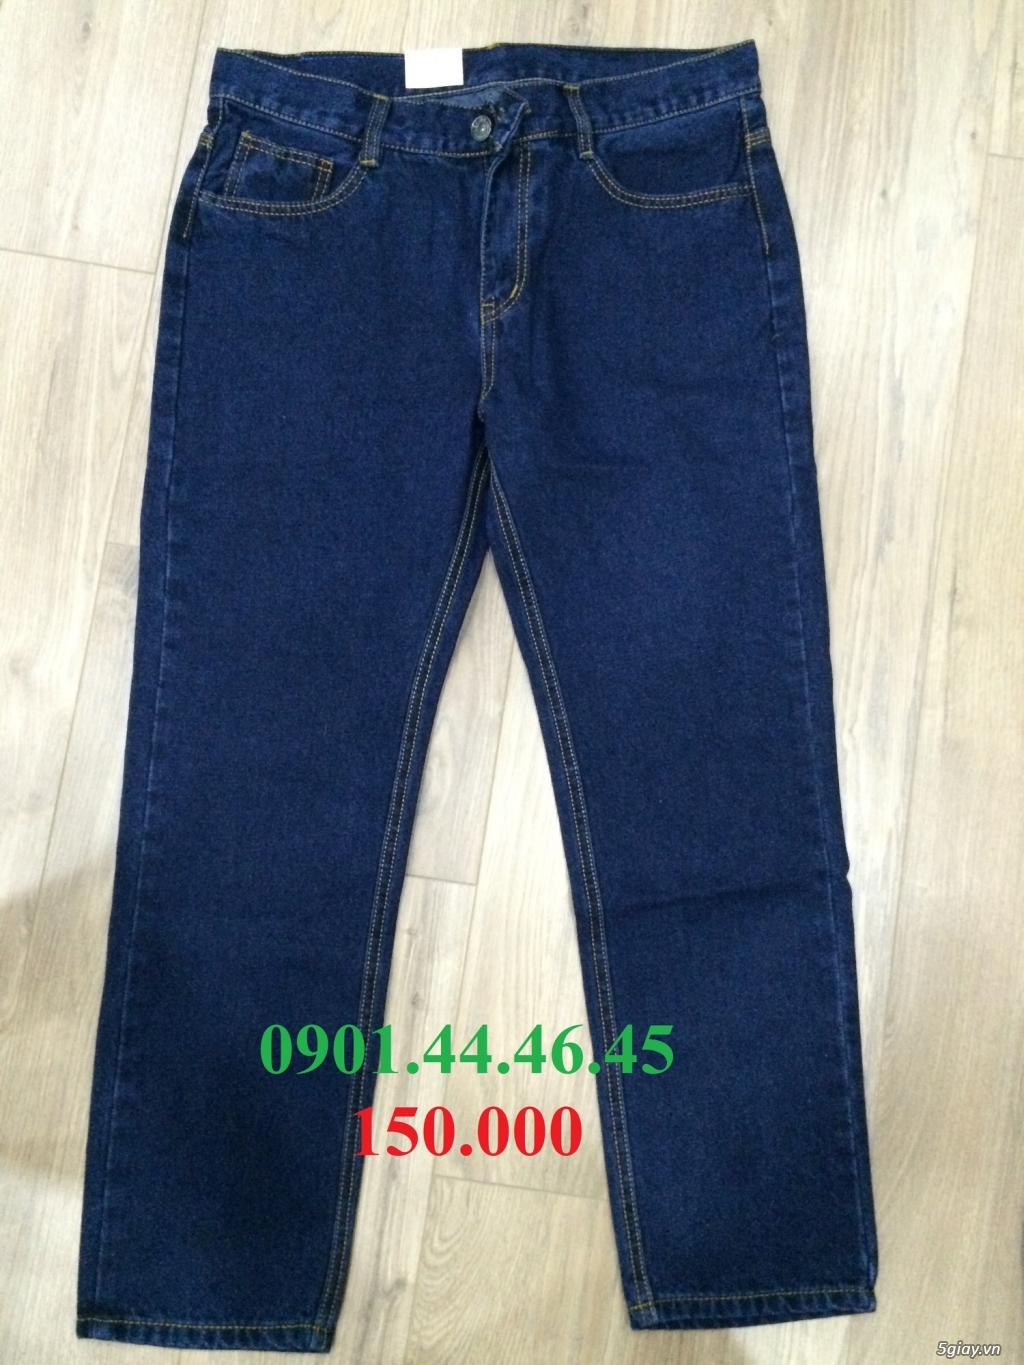 Xưởng may quần jean nam giá 90k rẻ đẹp